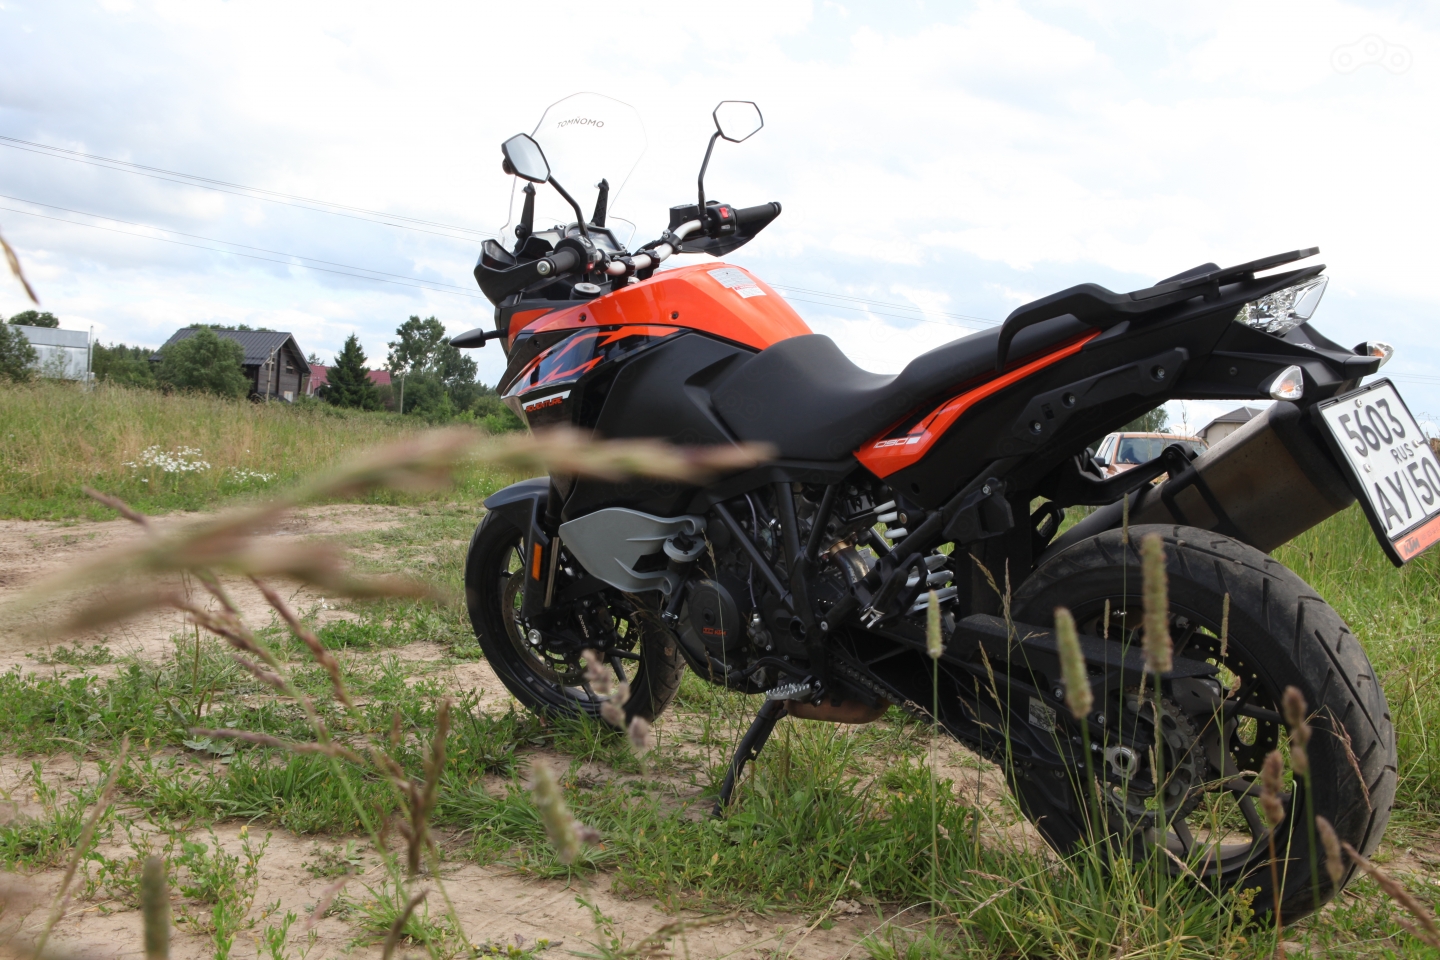 Стоимость нового KTM 1090 Adventure составляет 769 000 рублей, что делает его одним из самых доступных в классе